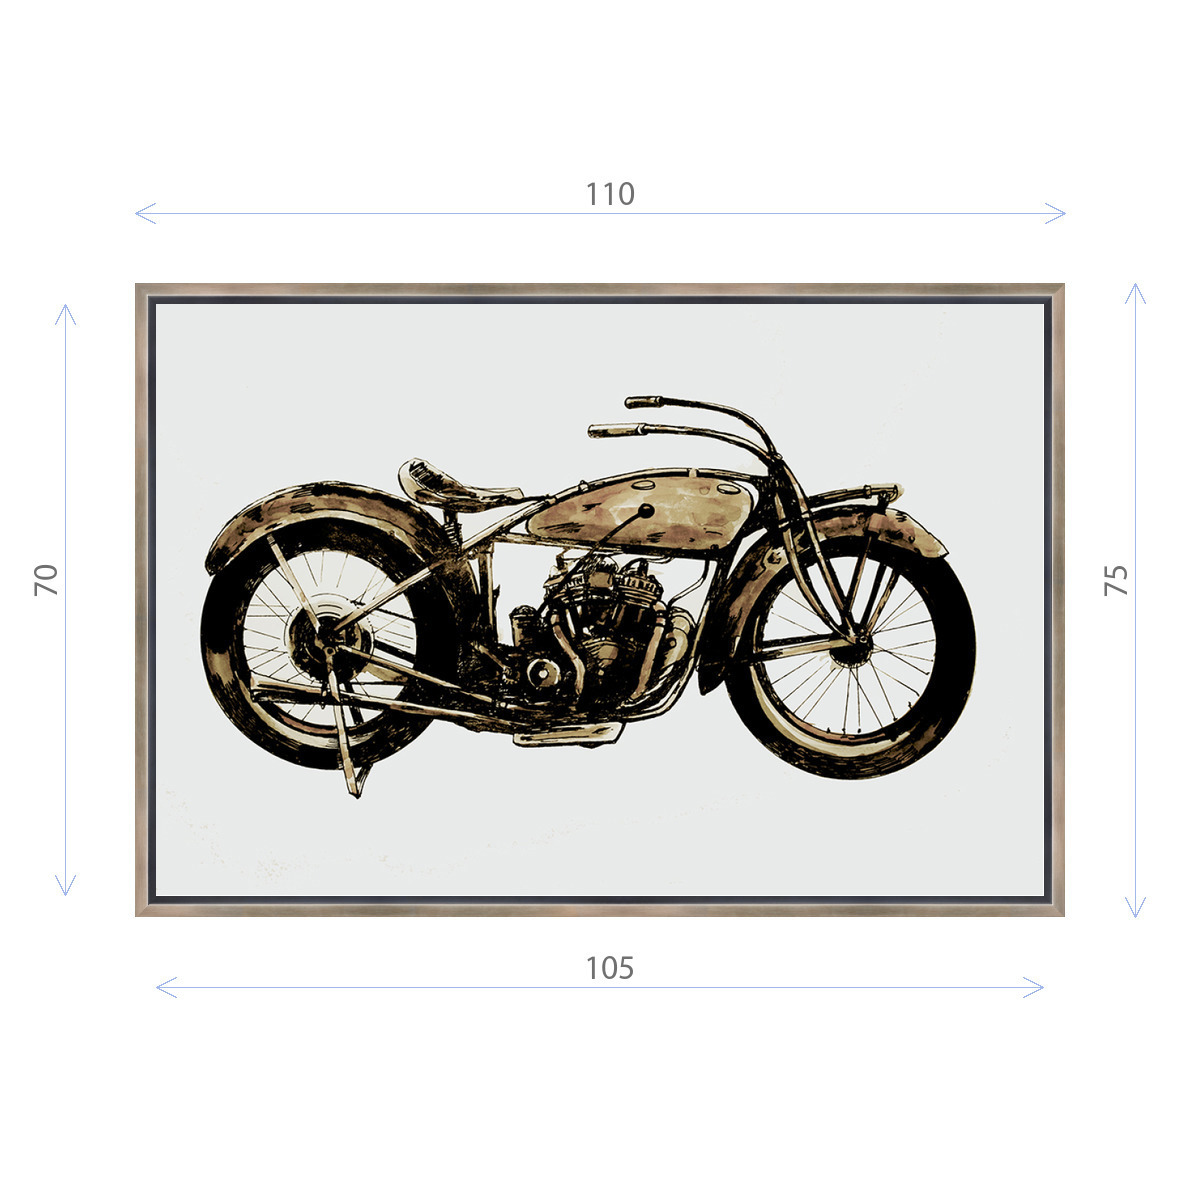 91049262 Картина в раме "Константин Малютин. Старый мотоцикл" 75x110 см STLM-0456829 ДЕКОР ДЕПО